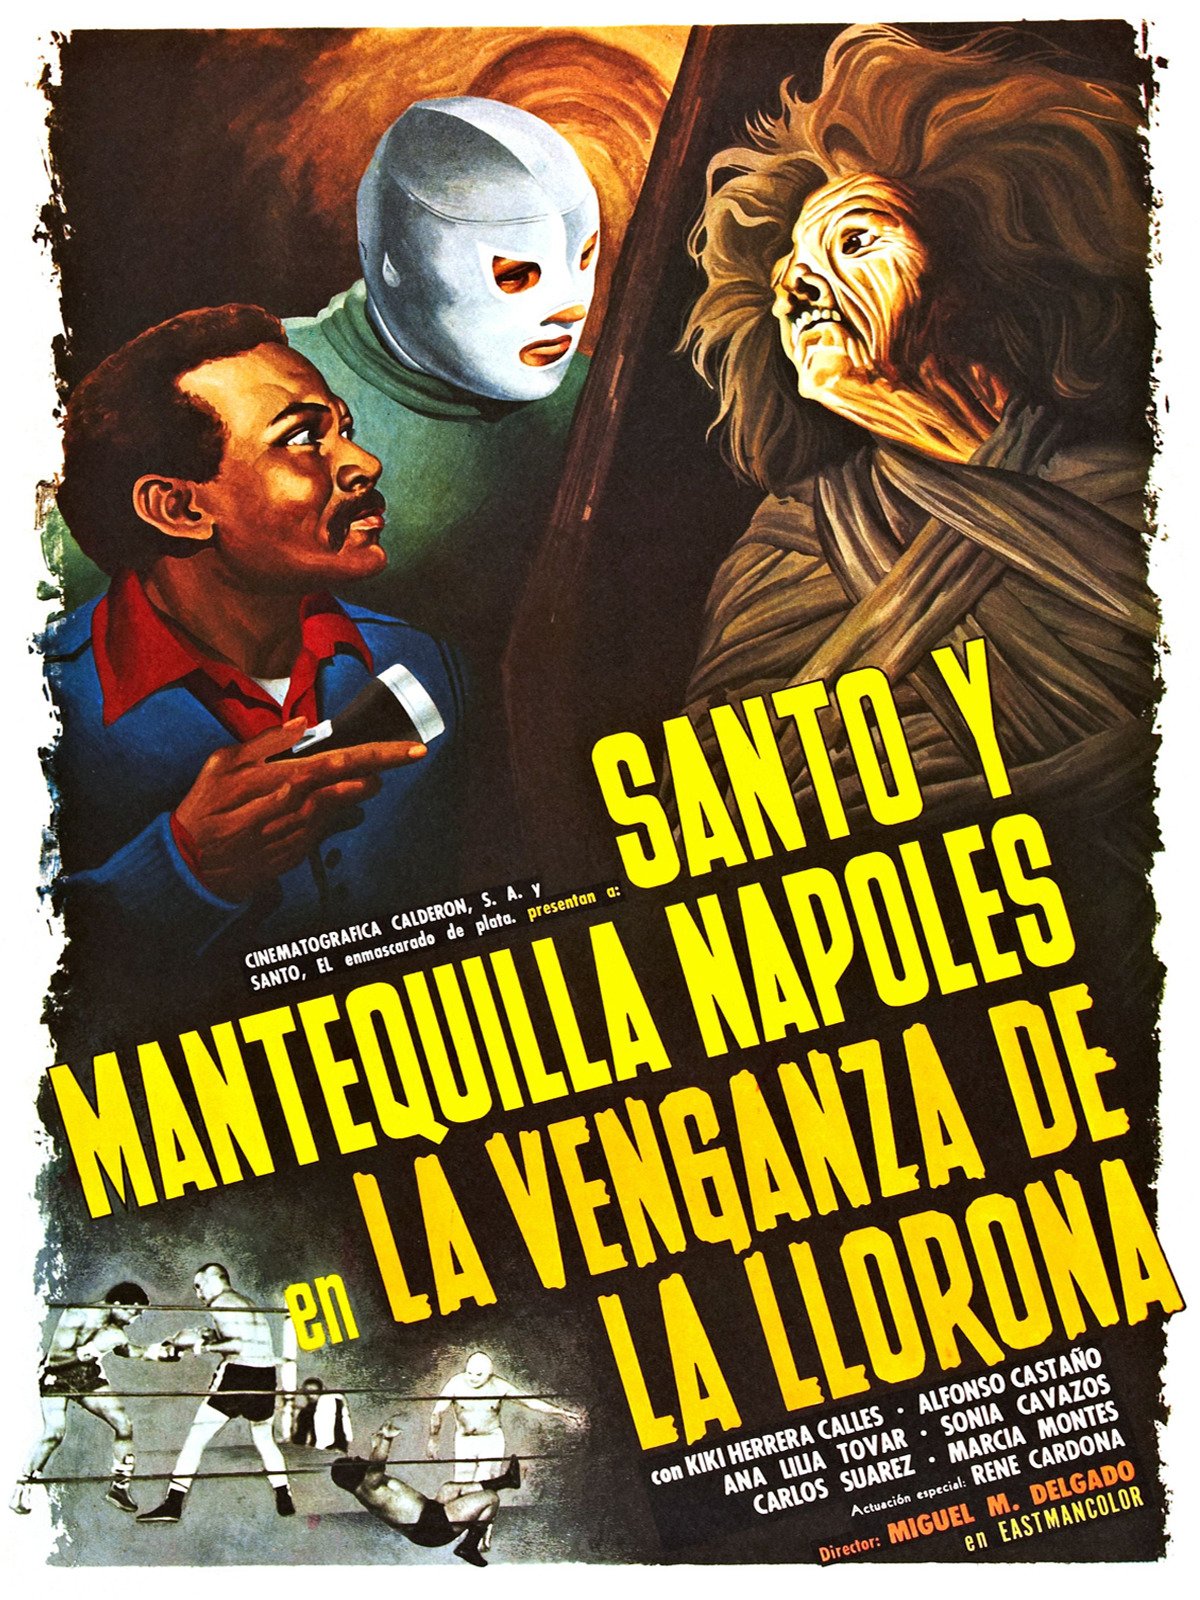 La película repsonsable de conjugarlos fue "La venganza de La Llorona" (Foto: Conarte.org.mx)